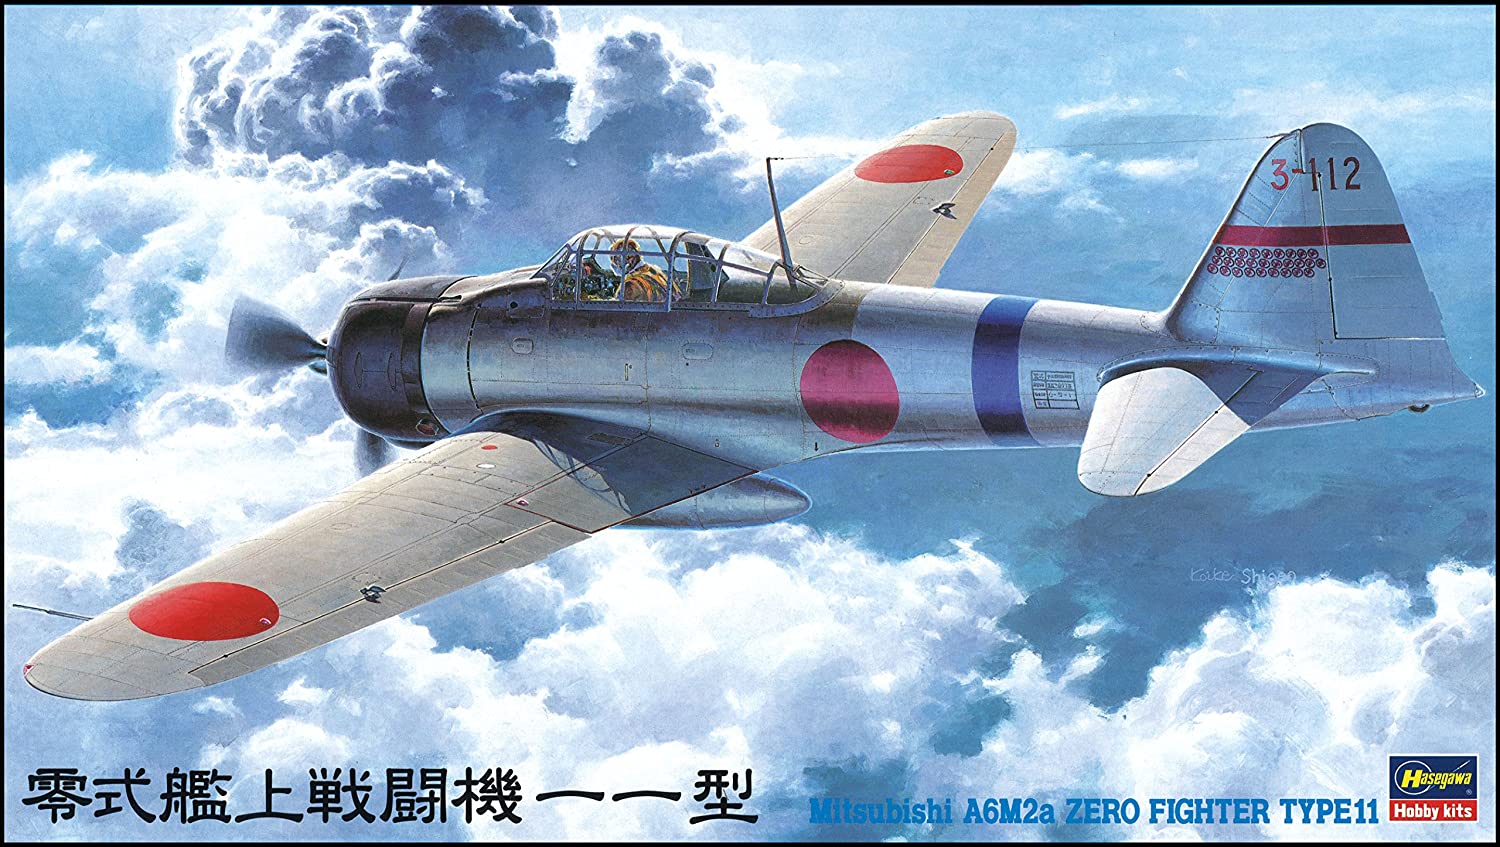 ハセガワ 1/48 日本海軍 三菱 A6M2a 零式艦上戦闘機 11型 プラモデル JT42